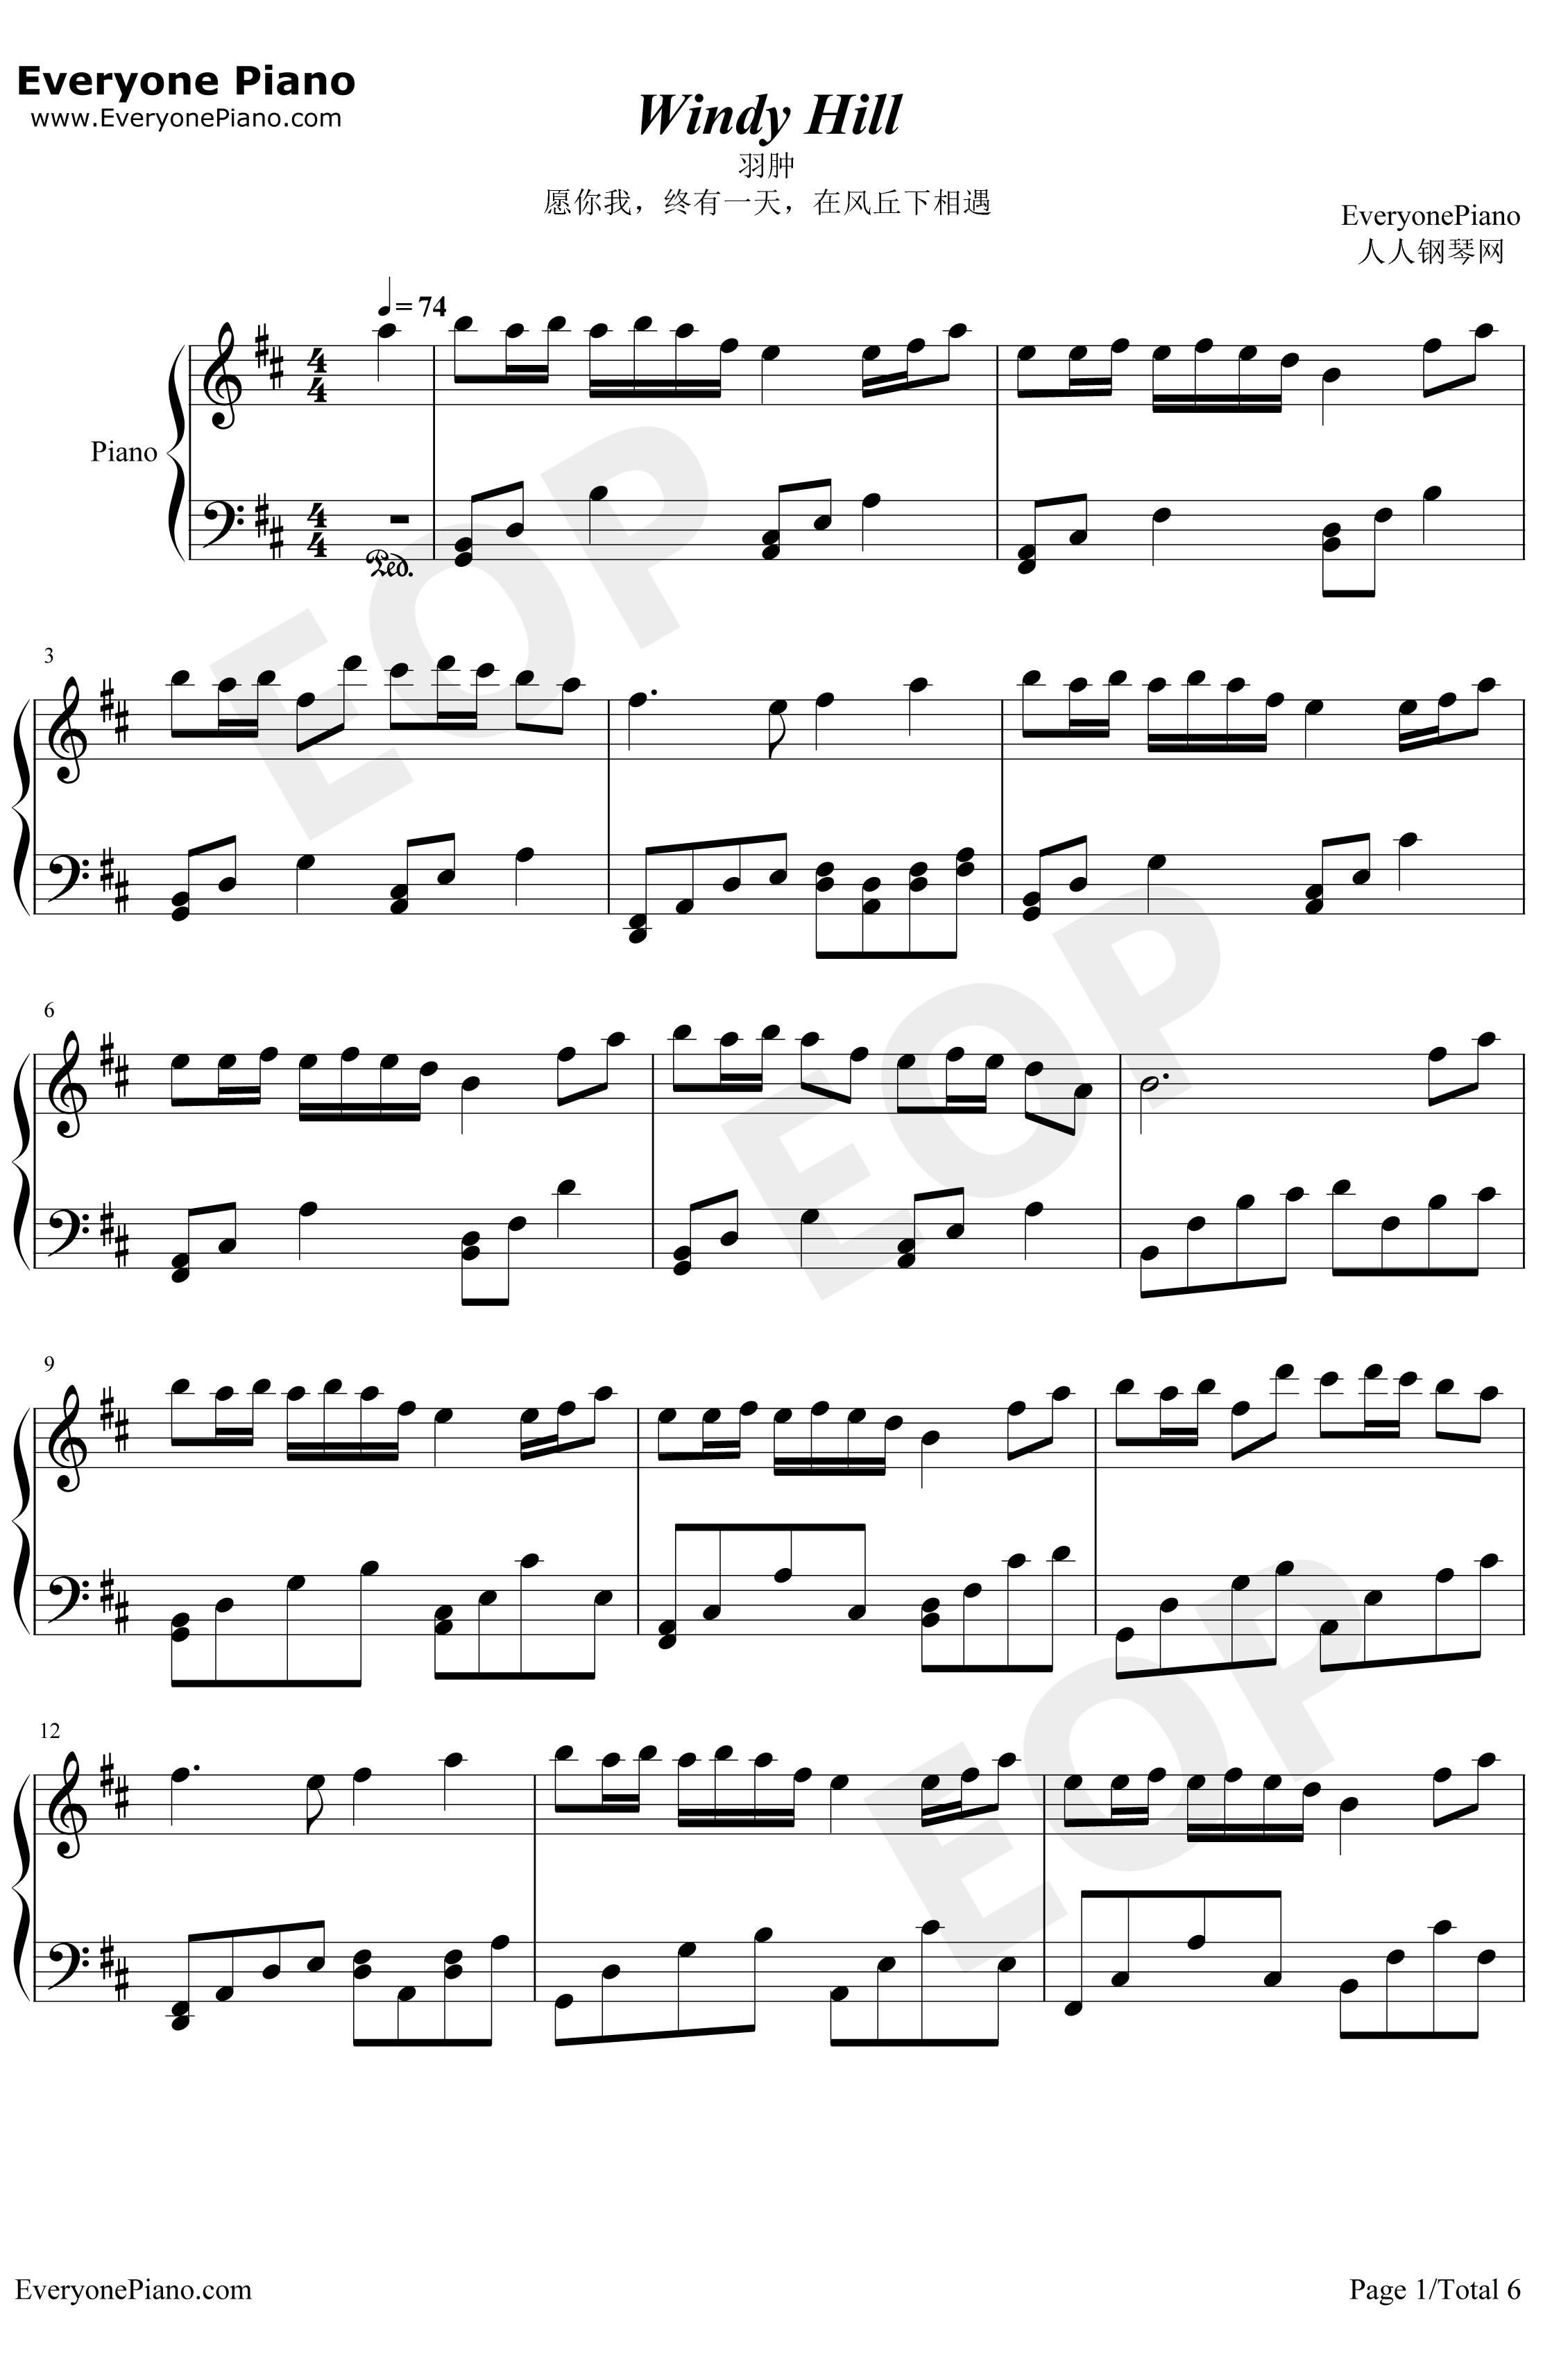 WindyHill钢琴谱-羽肿-很美的钢琴曲1